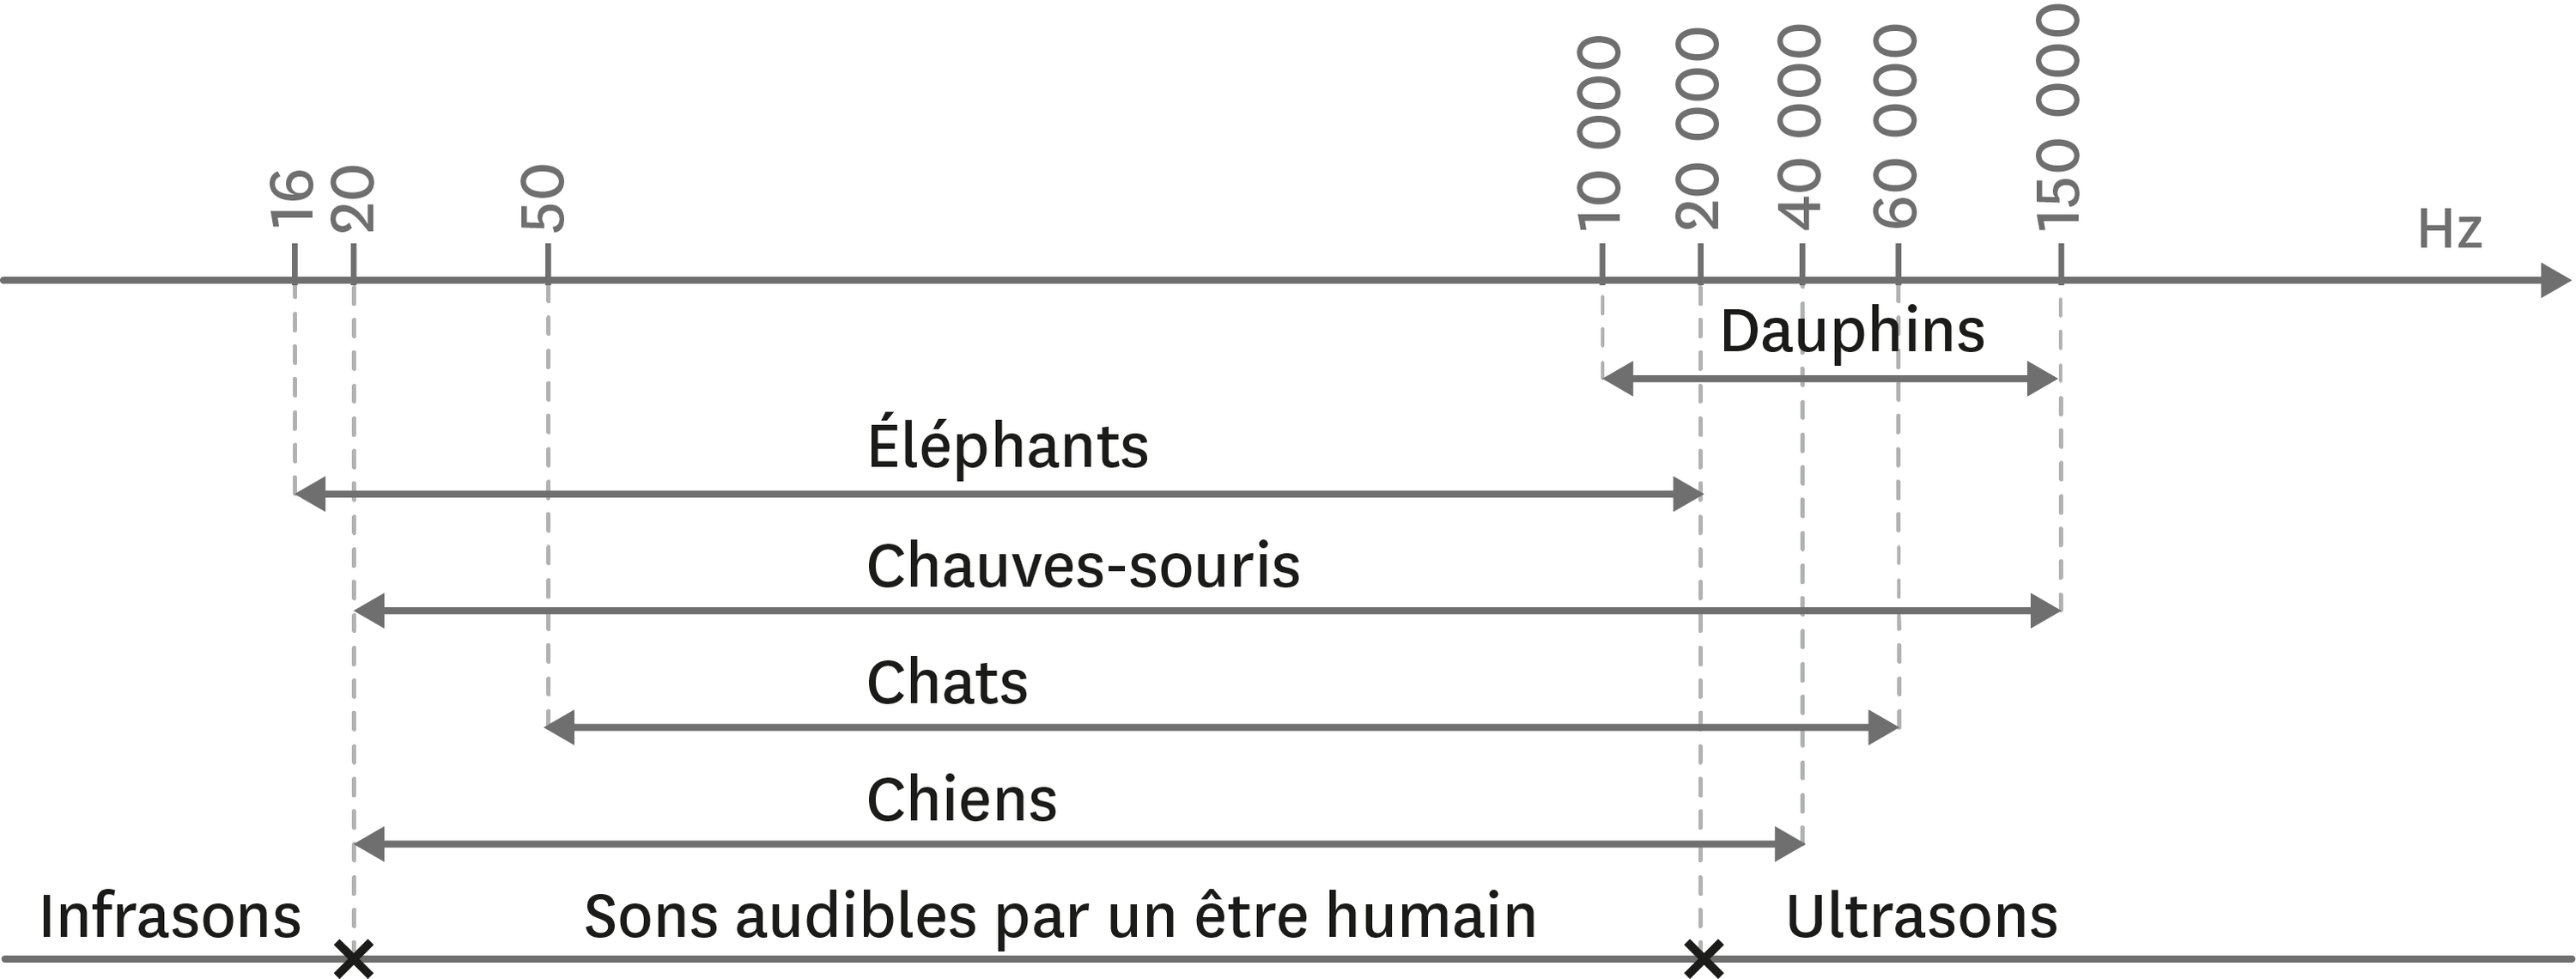 Domaines des sons audibles pour certaines espèces animales.